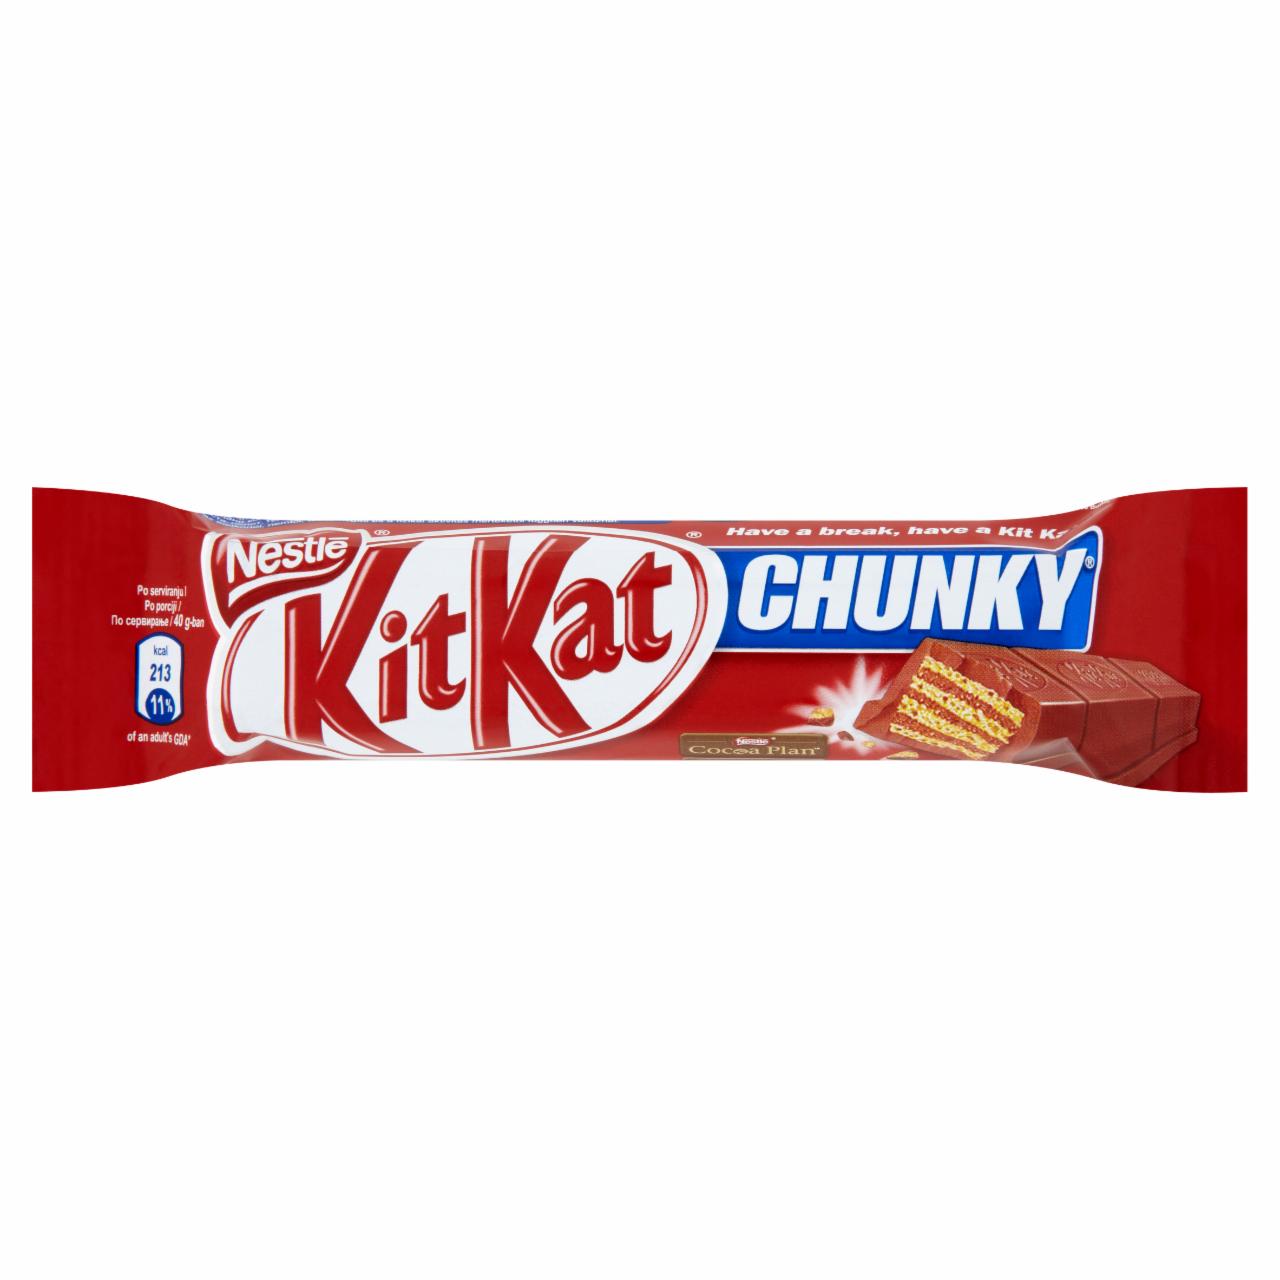 Képek - Kit Kat Chunky